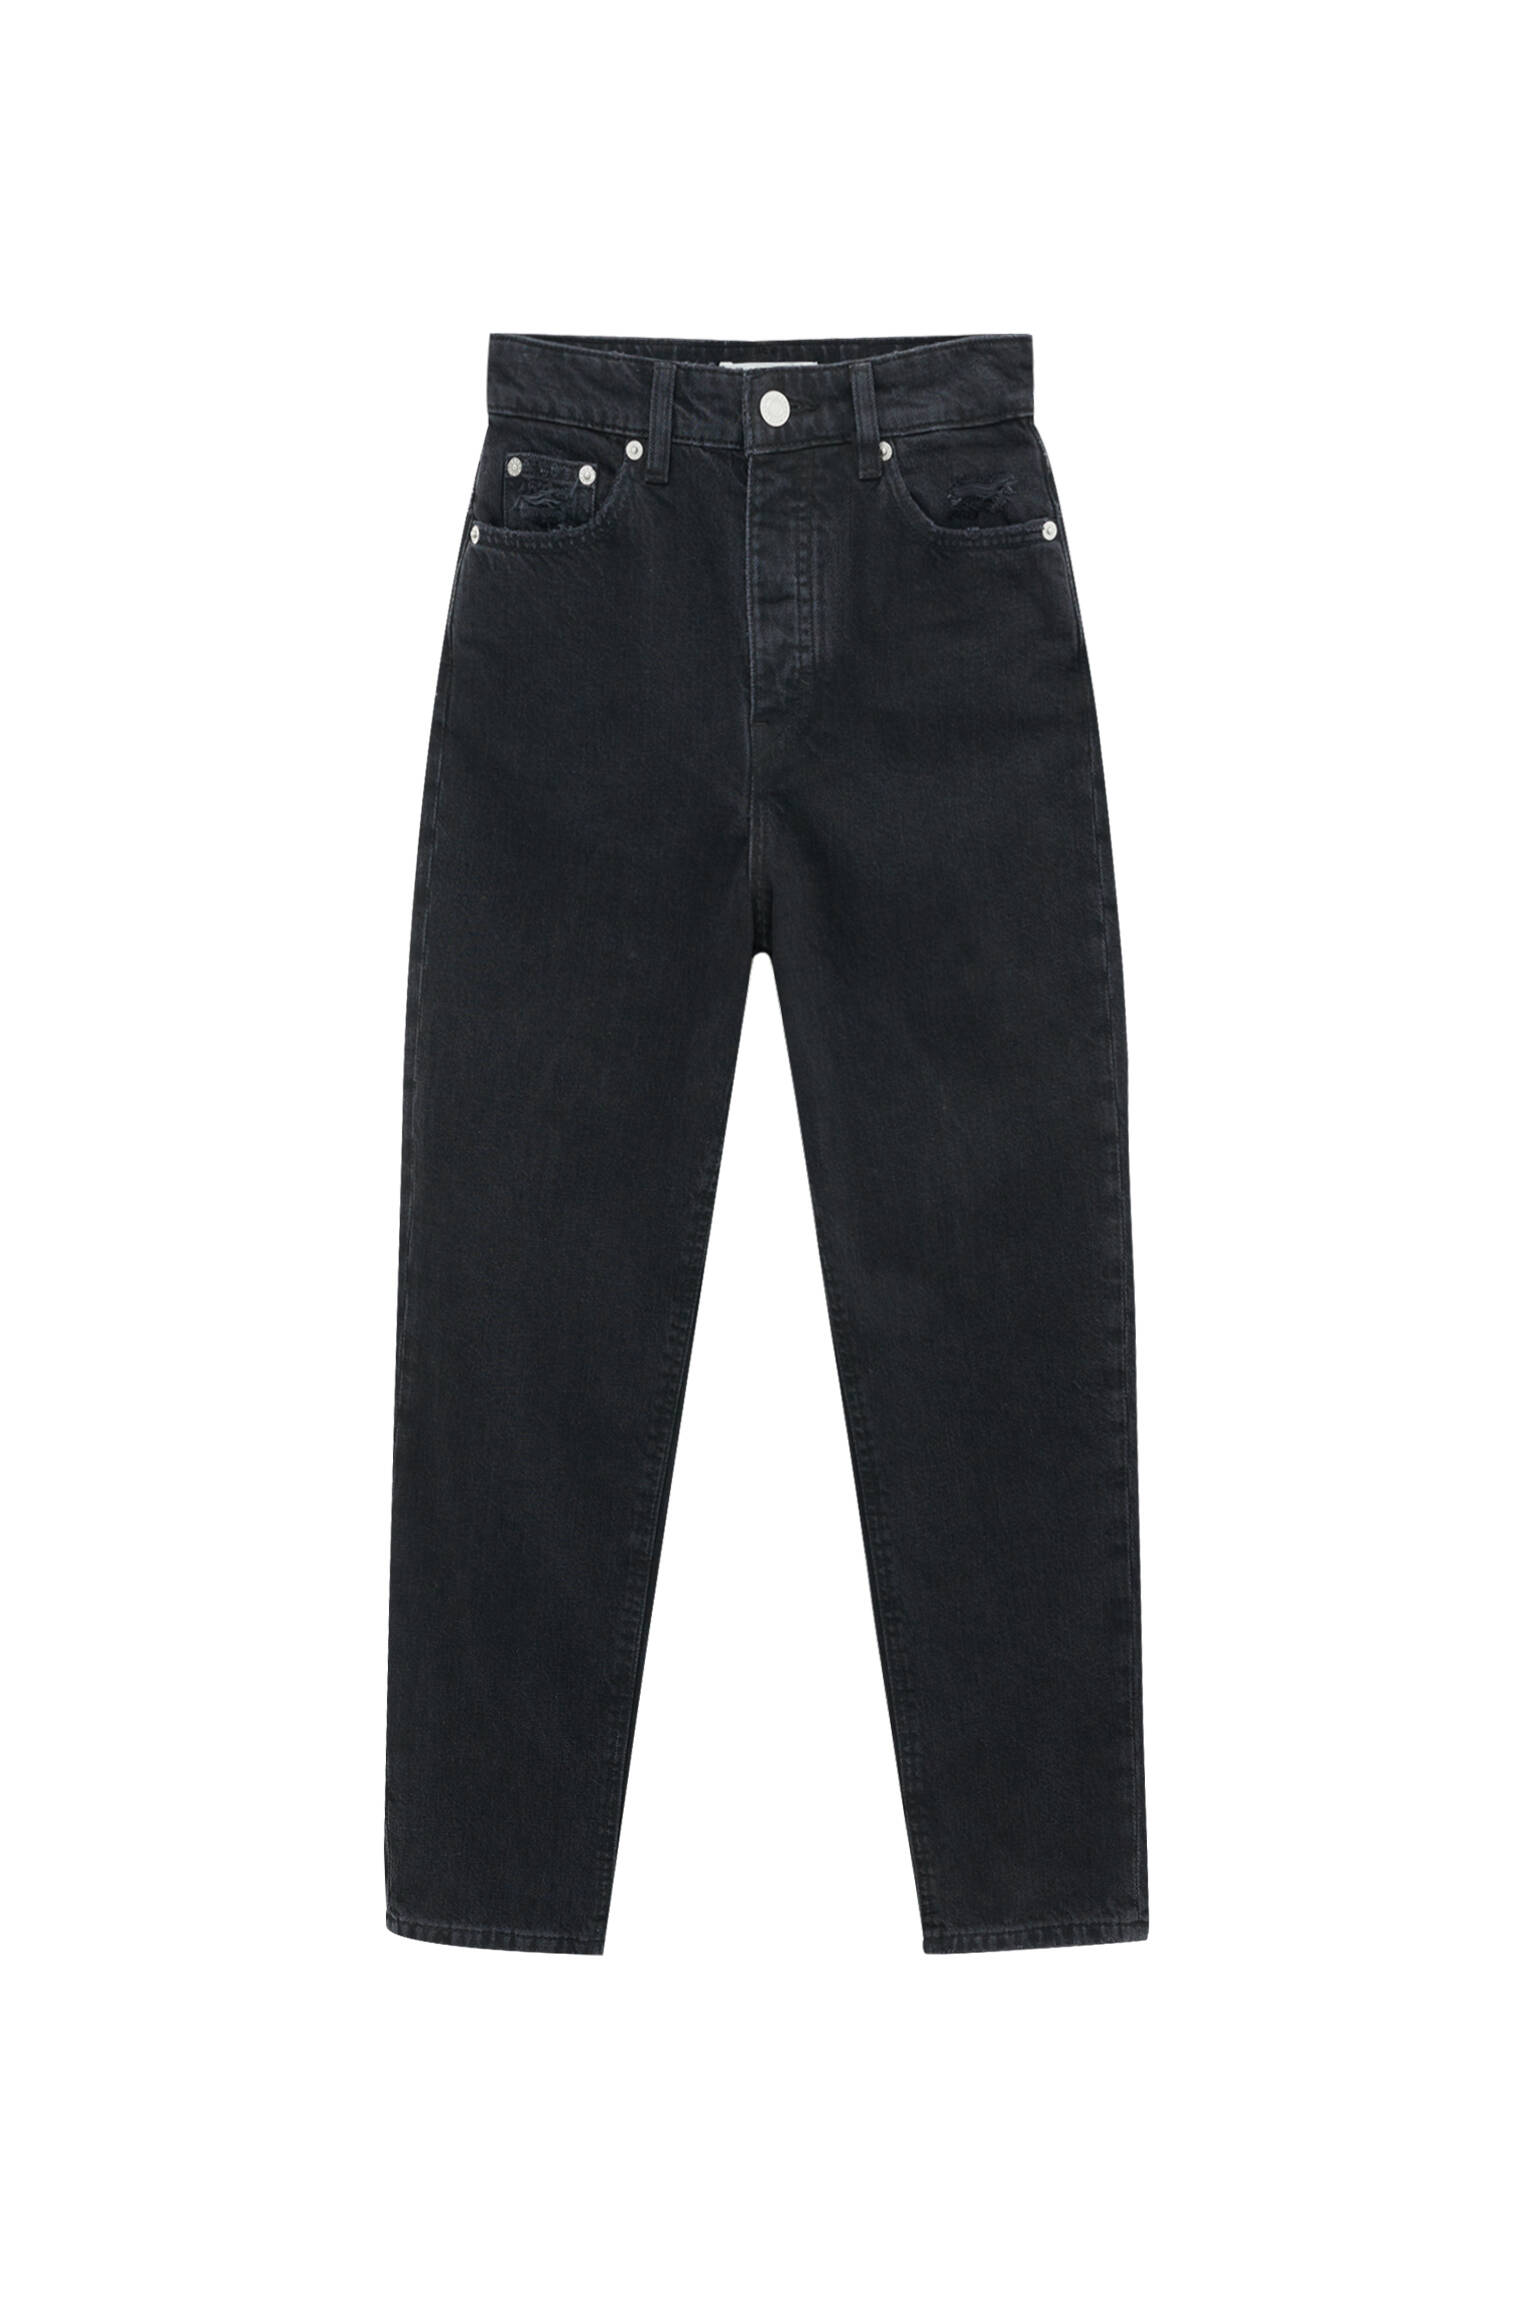 Pull&bear Femme Jeans Mom Fit Super Taille Haute De Couleur Noire, Avec Cinq Poches, Passant De Cein